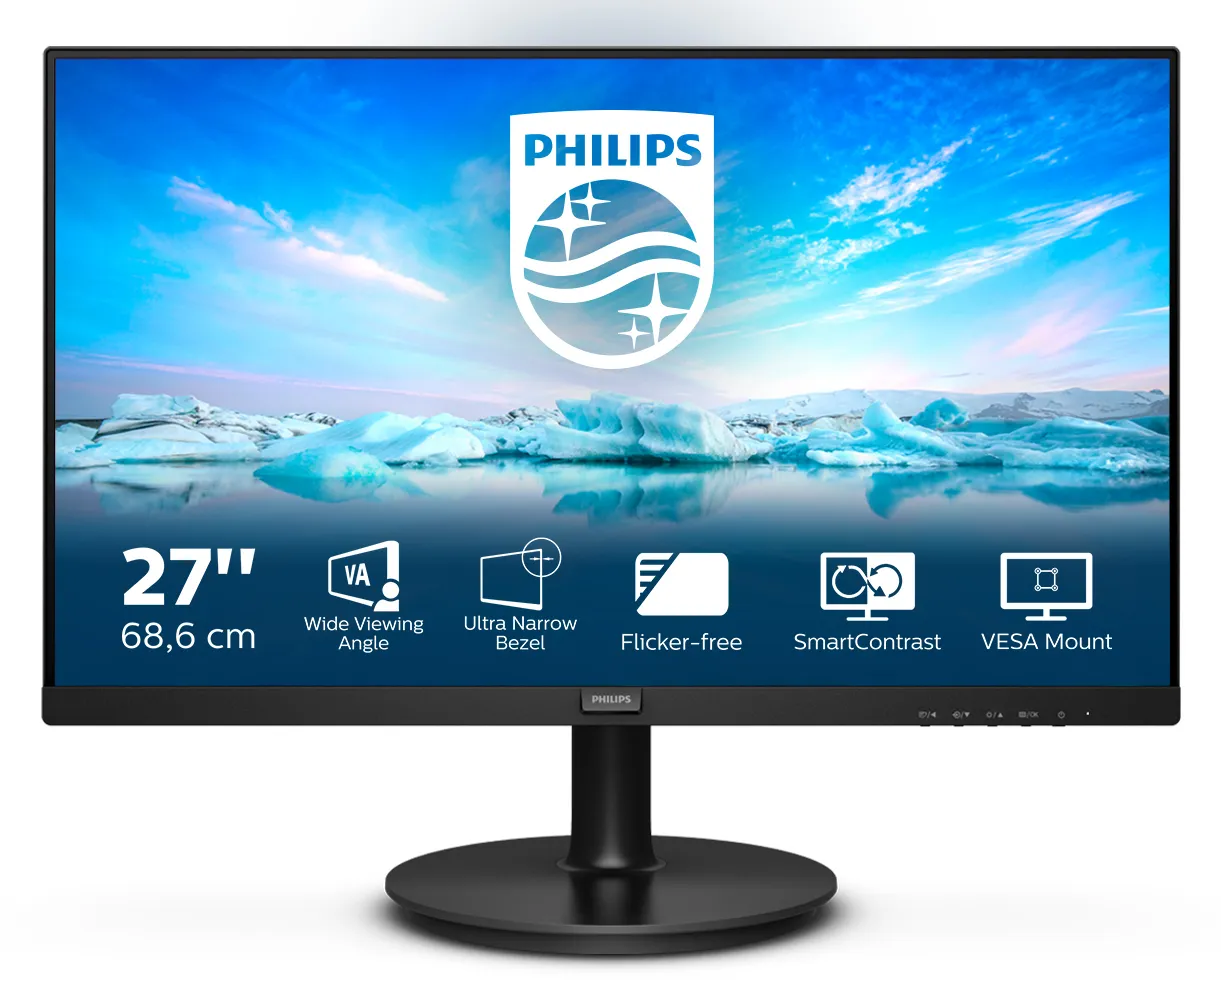 Vente PHILIPS 271V8LA/00 27p VA LCD FHD 1920x1080 16:9 Philips au meilleur prix - visuel 8